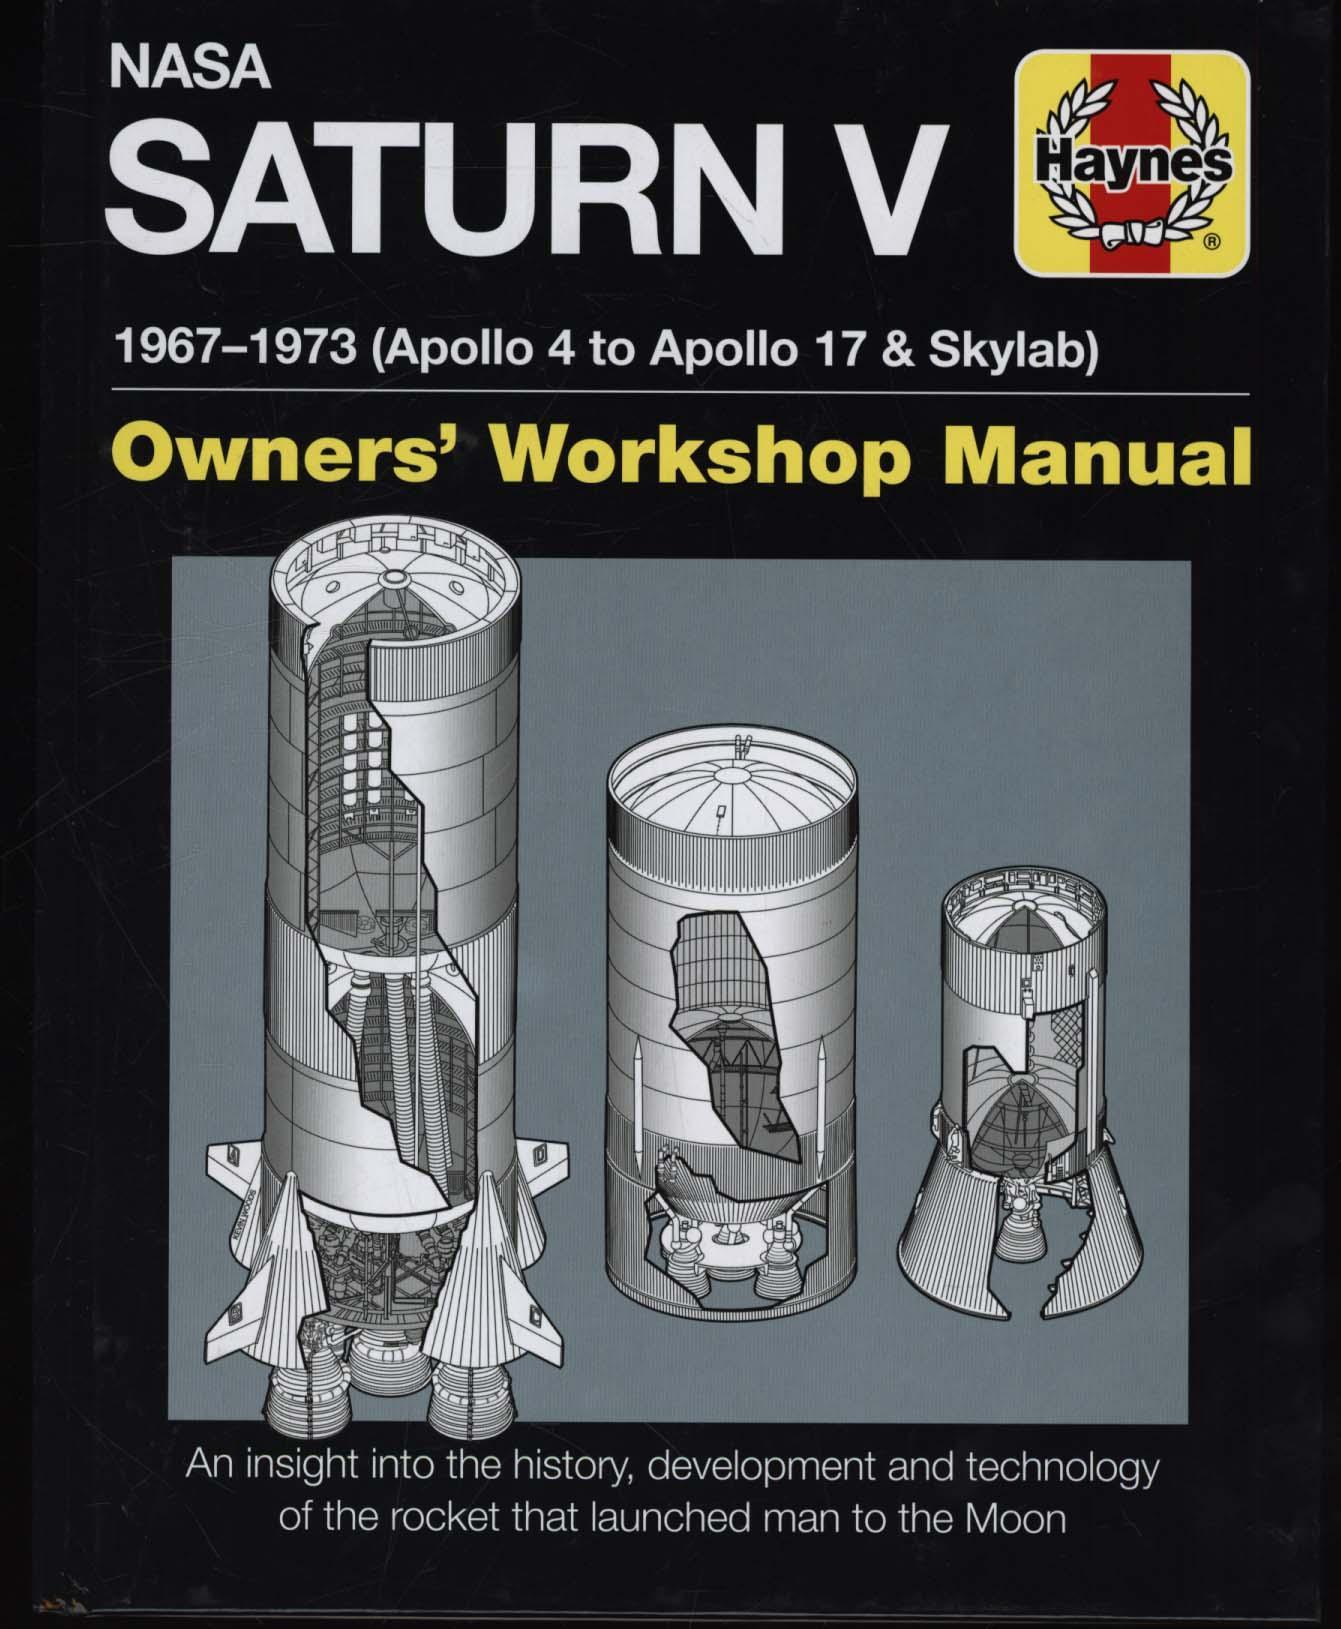 NASA Saturn V Manual